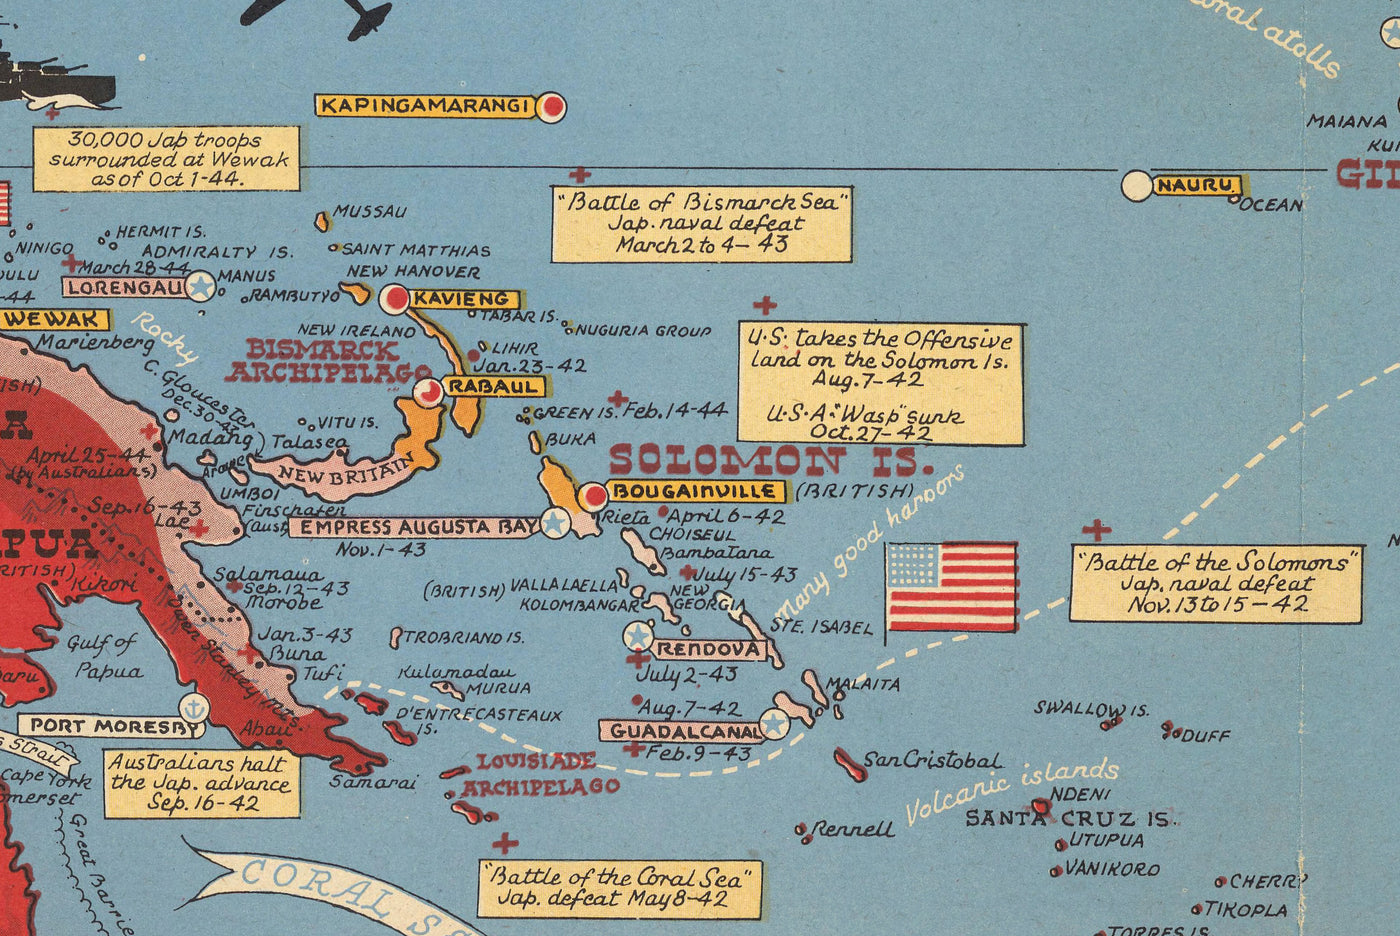 Alte Karte des 2. Weltkriegs vom Pazifik und Tokio im Jahr 1942 von Stanley Turner - "Datierte Ereignisse" Invasion Japans und des Fernen Ostens